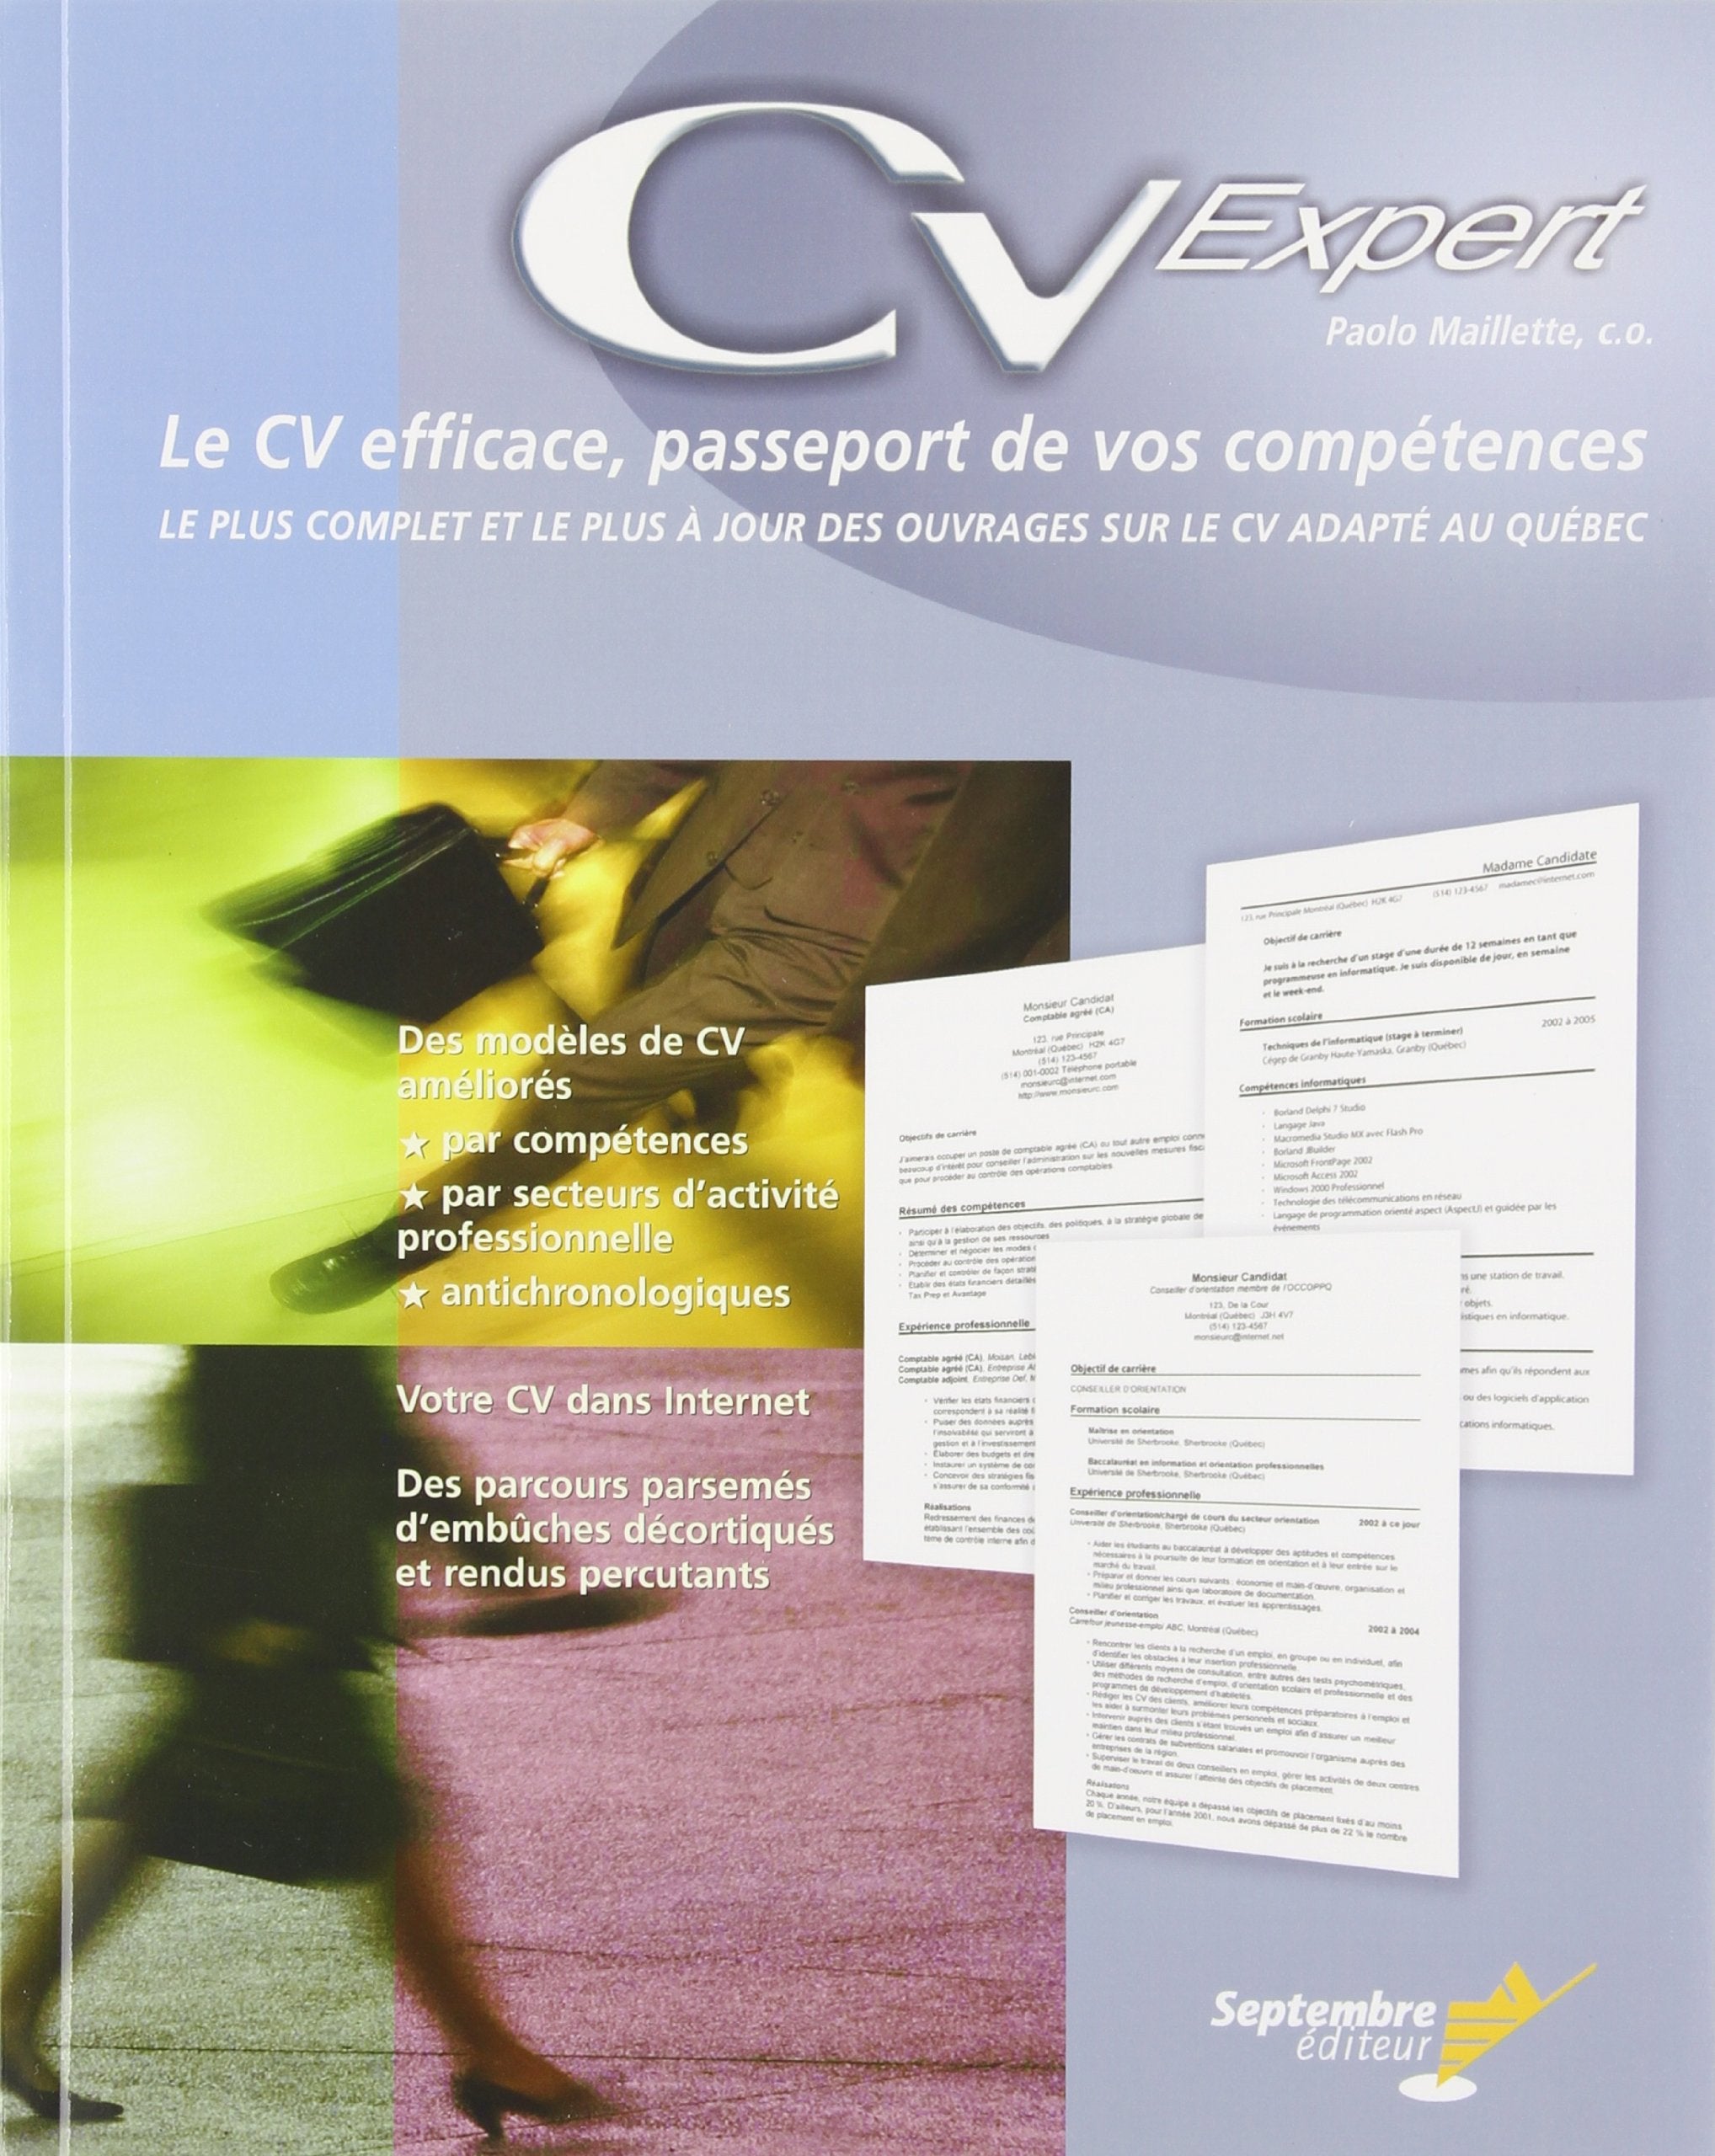 Livre ISBN 2894712324 CV Expert : Le CV efficace, passeport de vos compétences (Paolo Maillette)